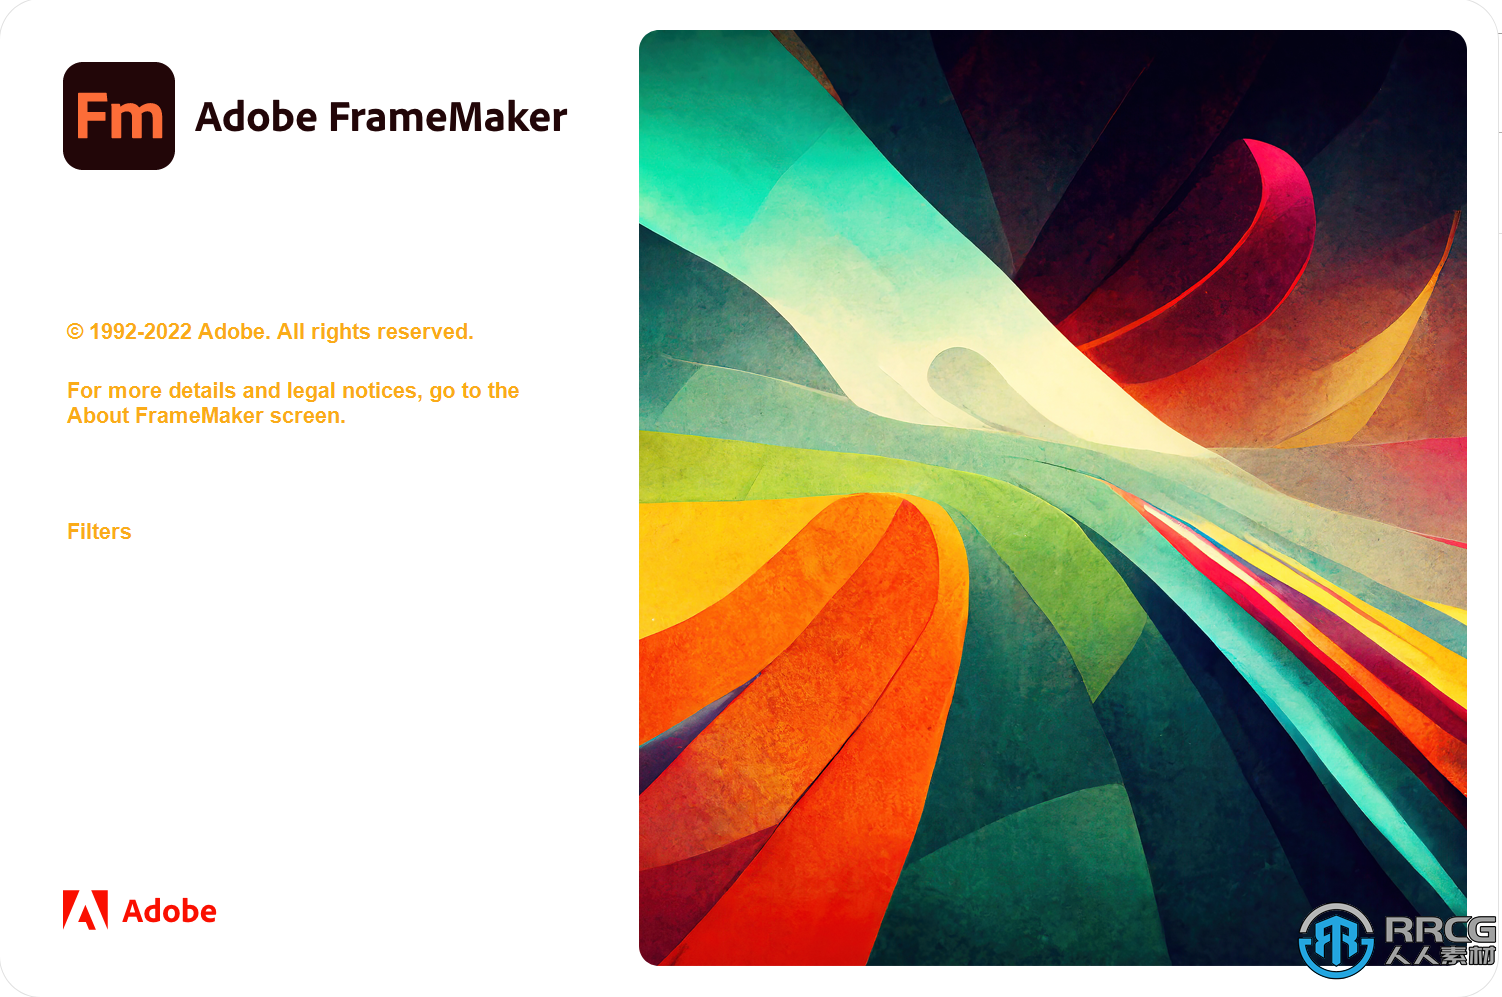 Adobe FrameMaker 2022頁面排版軟件V17.0.2.431版